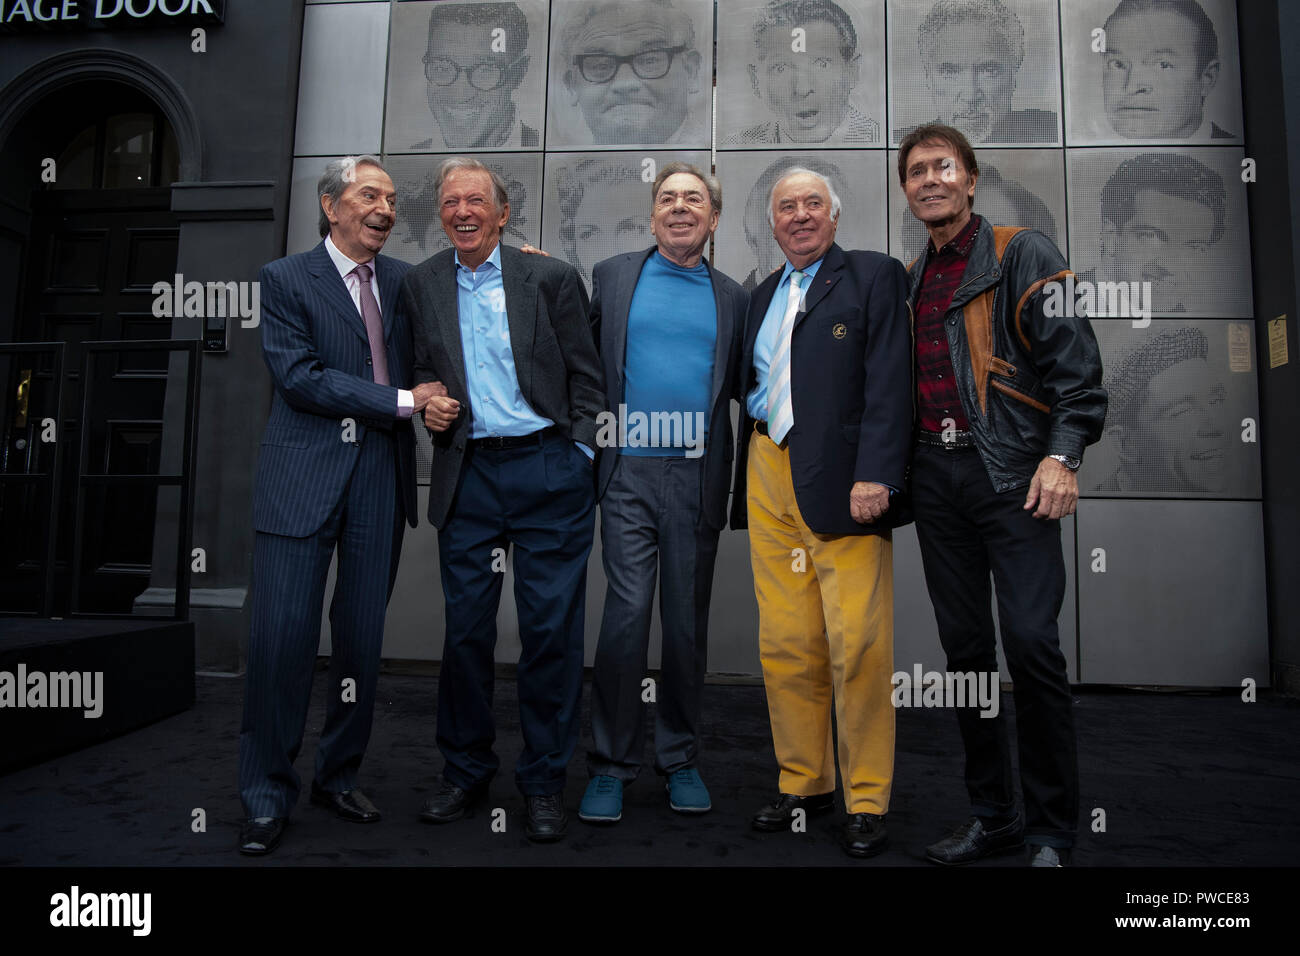 (De izquierda a derecha) Des Oconnor, Tommy Steele, Lord Andrew Lloyd Webber, Jimmy Tarbuck y Sir Cliff Richard revelan The Wall of Fame, una nueva instalación artística en el London Palladium en Londres. Foto de stock